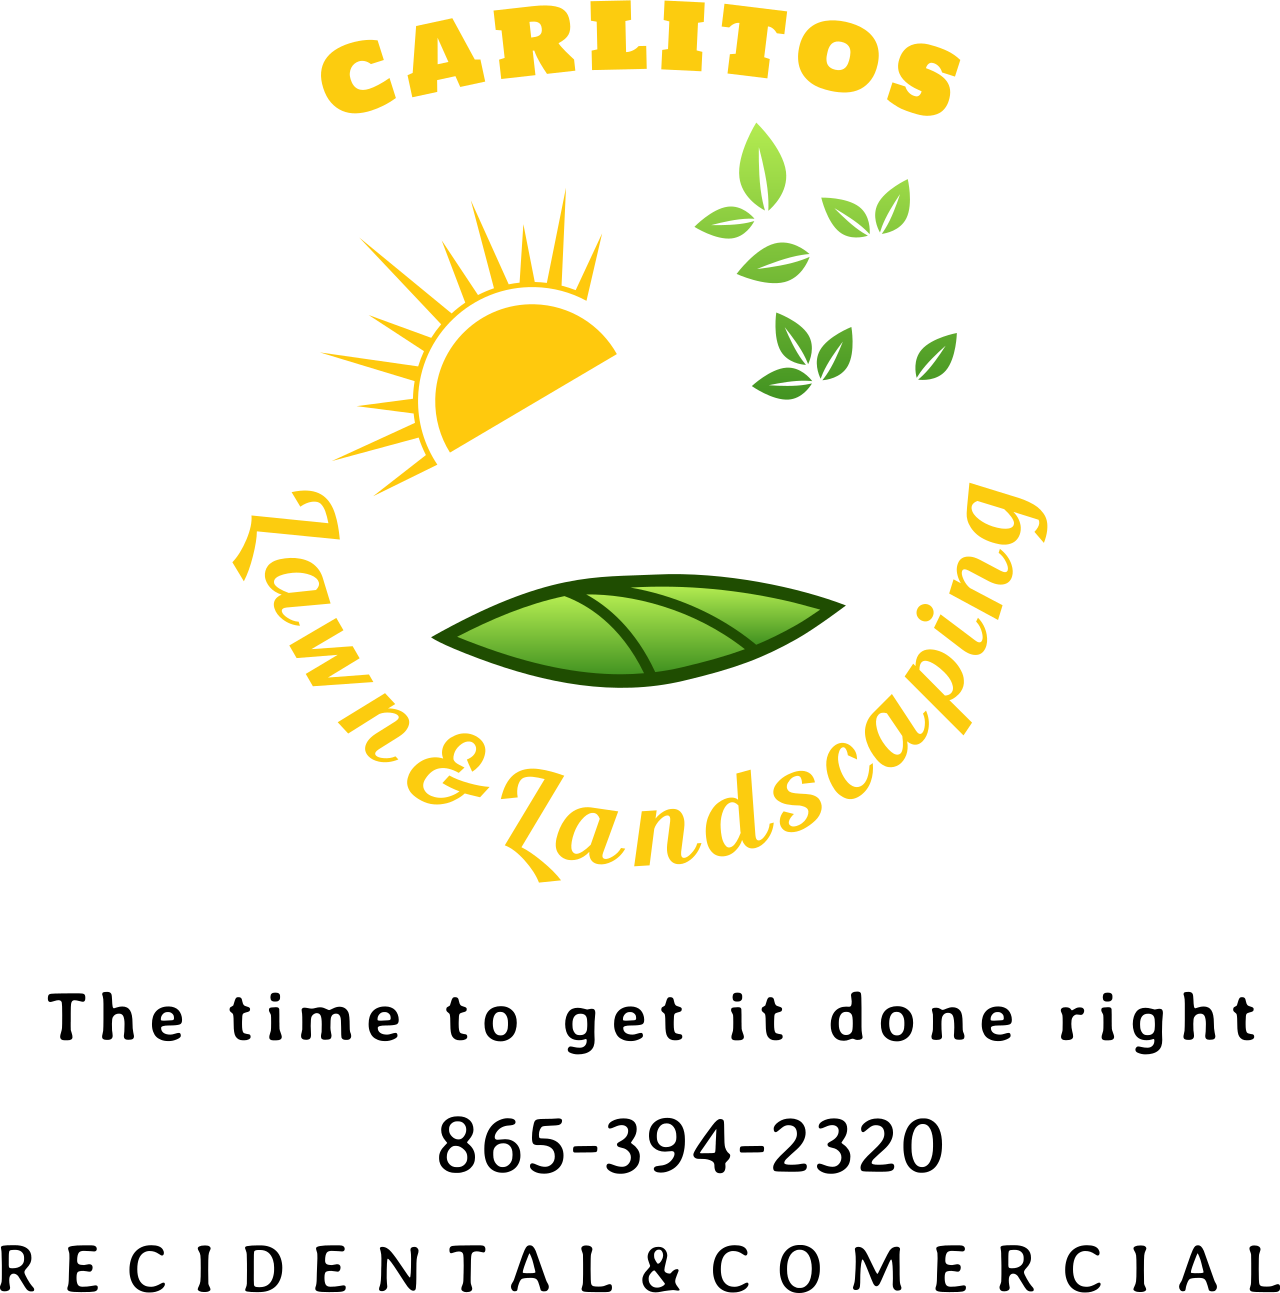 Carlitos's logo